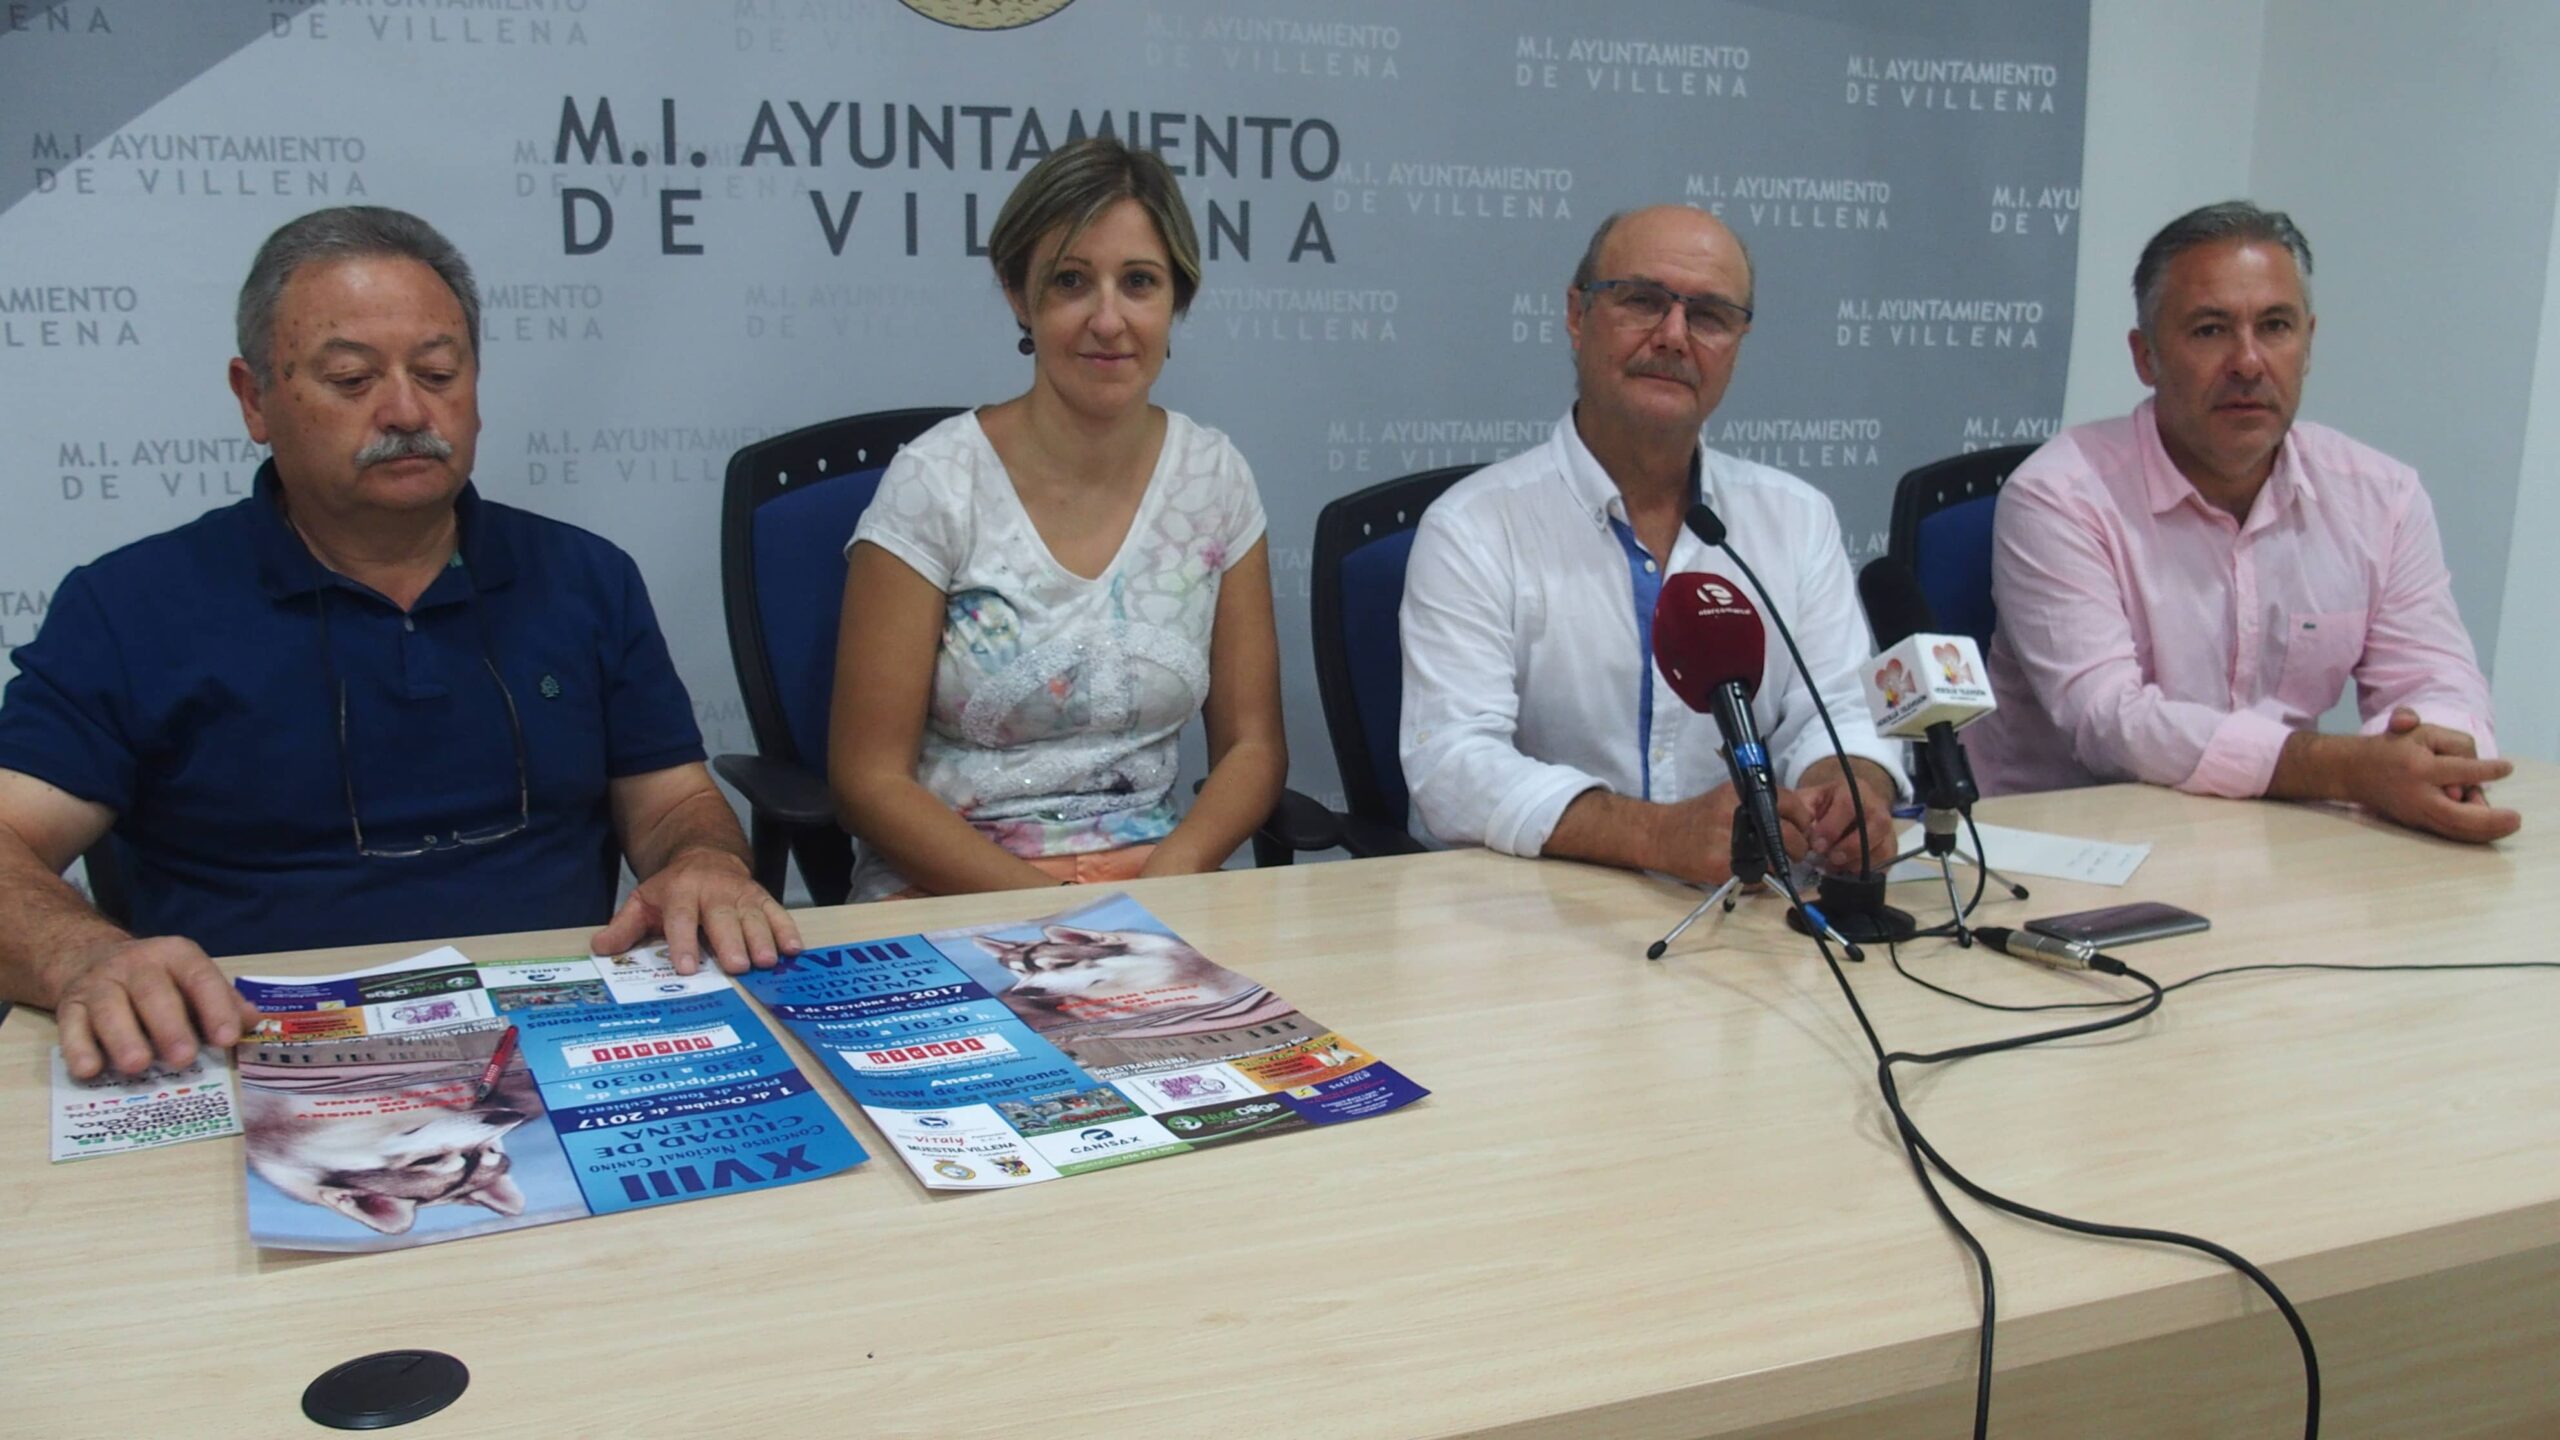 Pasión Ecuestre donará sus beneficios a APAC en la Feria de Muestras de Villena